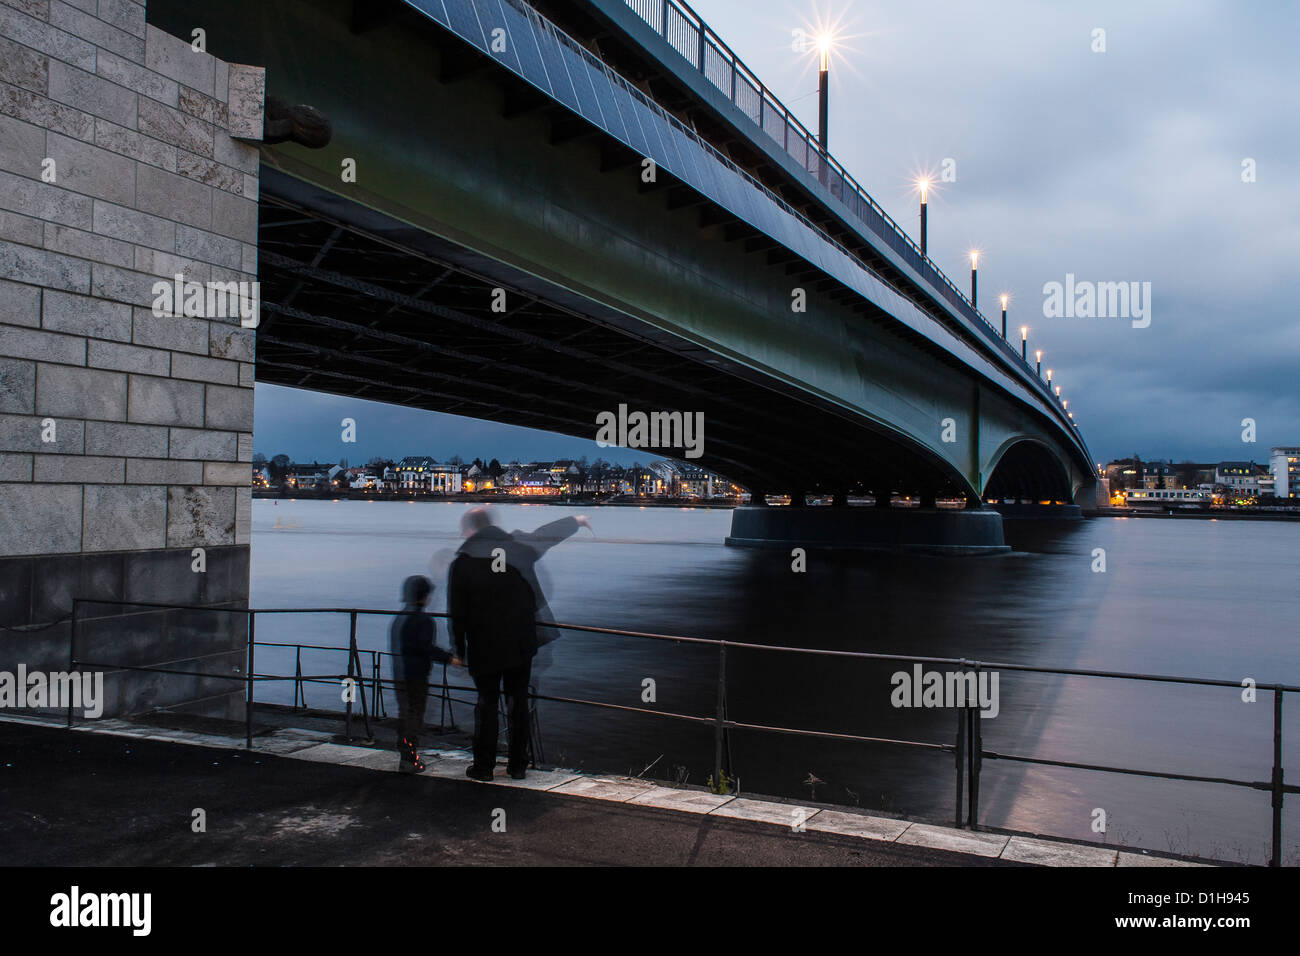 Kennedybrücke nella città di Bonn, a mezzo ponte dei tre ponti dell'ex capitale della Germania - riva sinistra Foto Stock